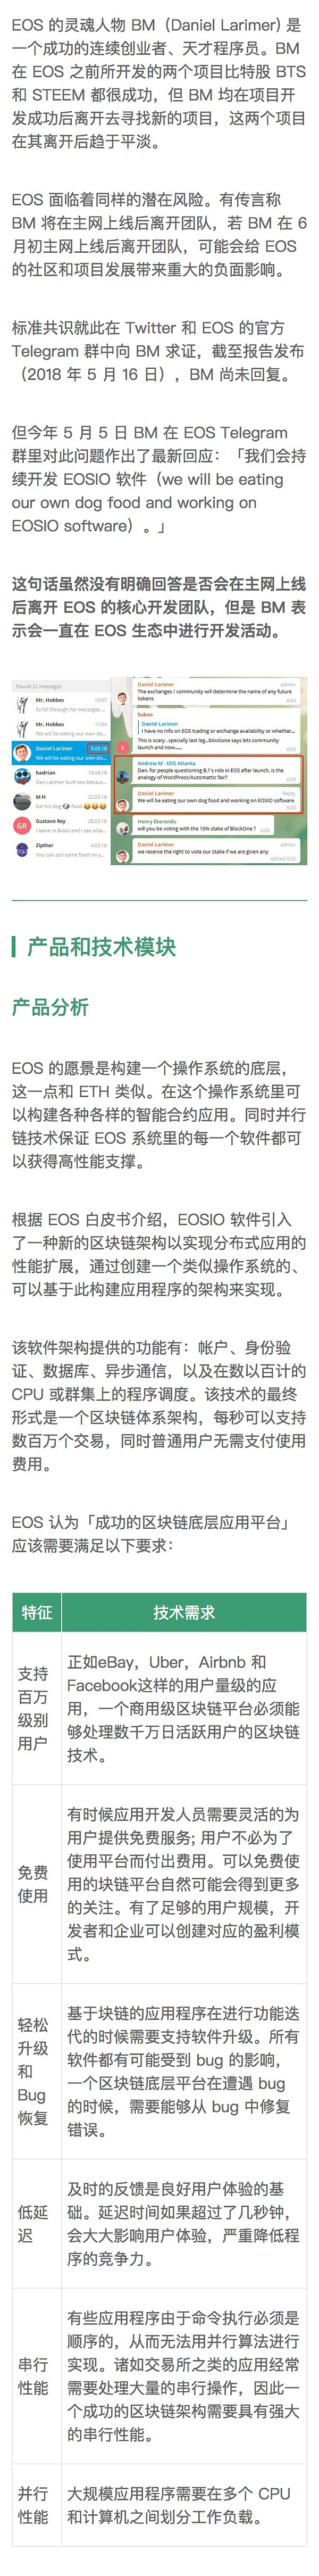 EOS 生态进展较快 但安全性仍存隐患｜标准共识评级调整